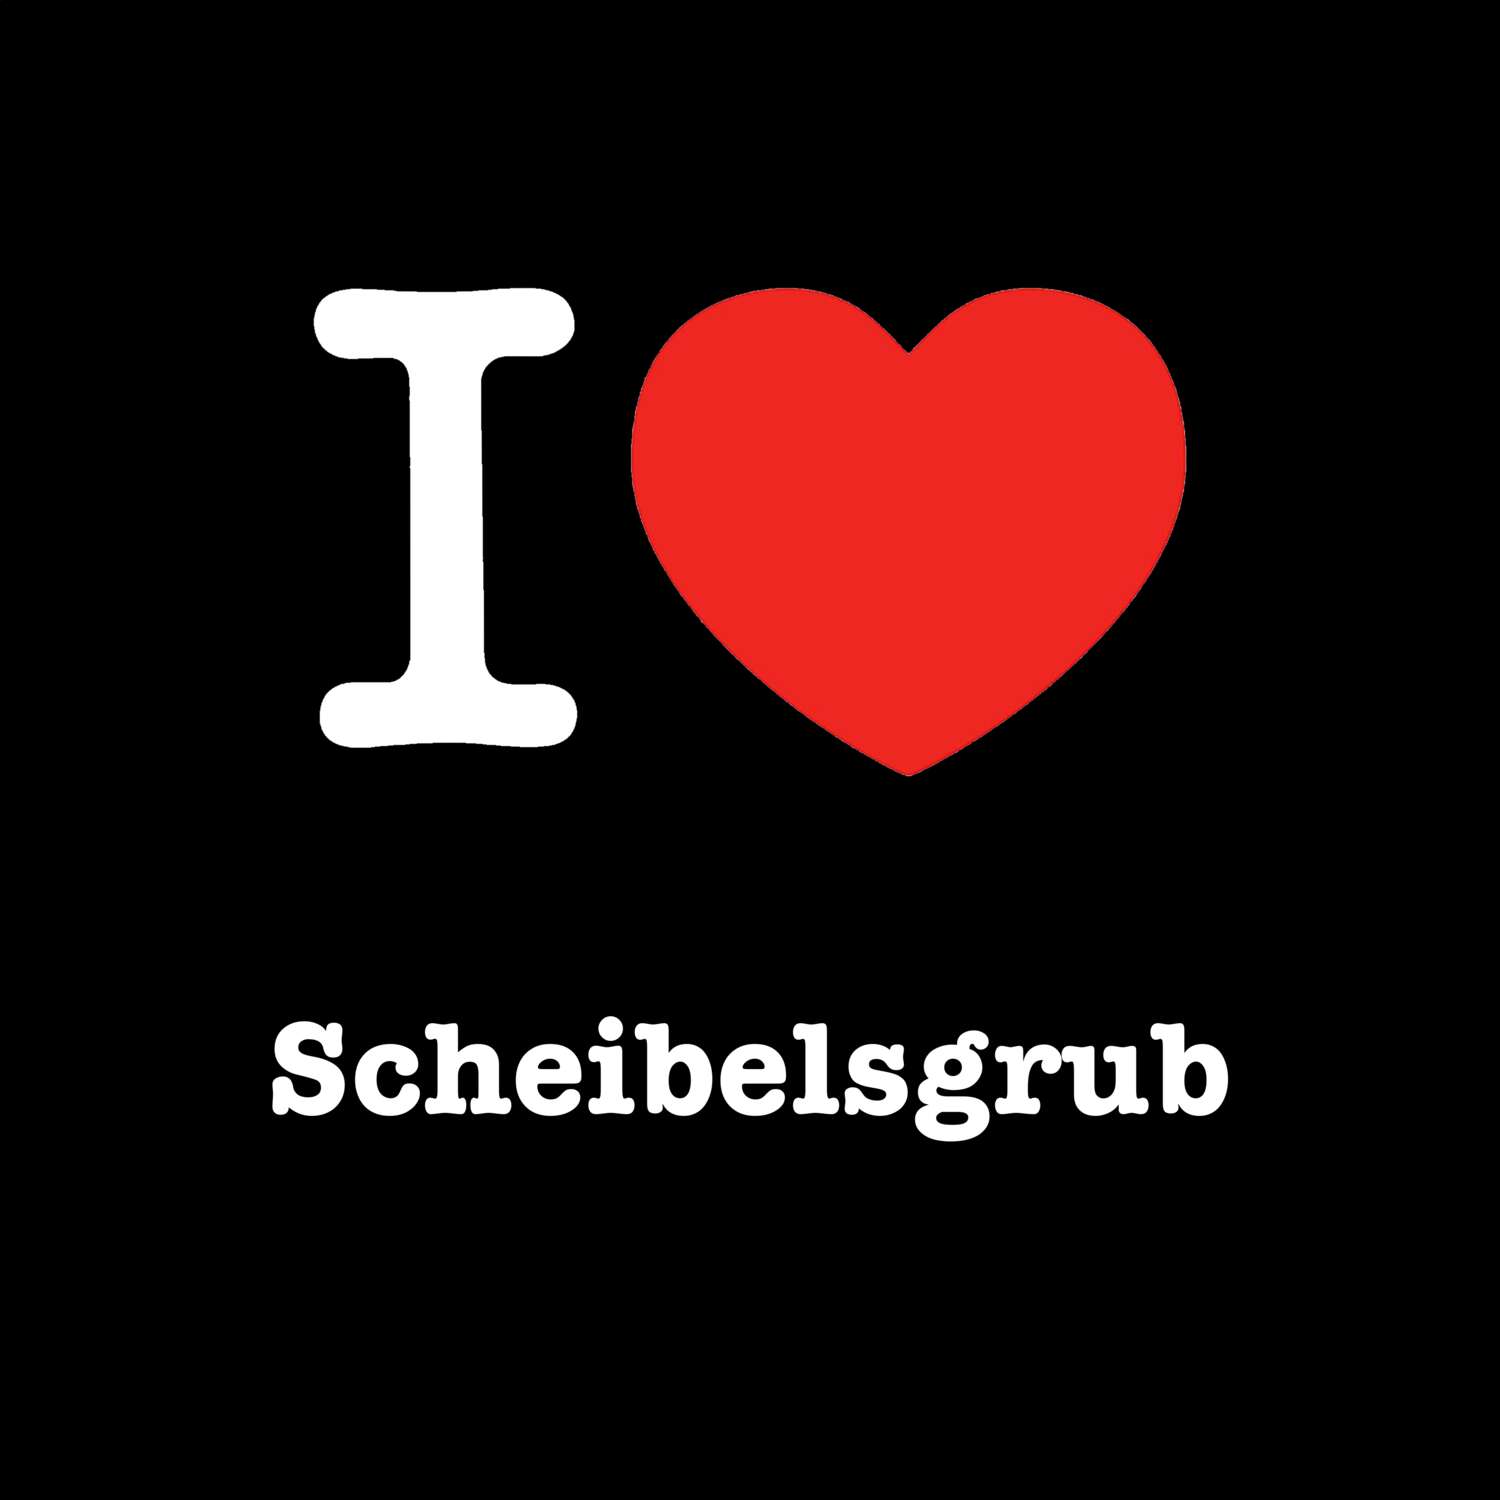 Scheibelsgrub T-Shirt »I love«